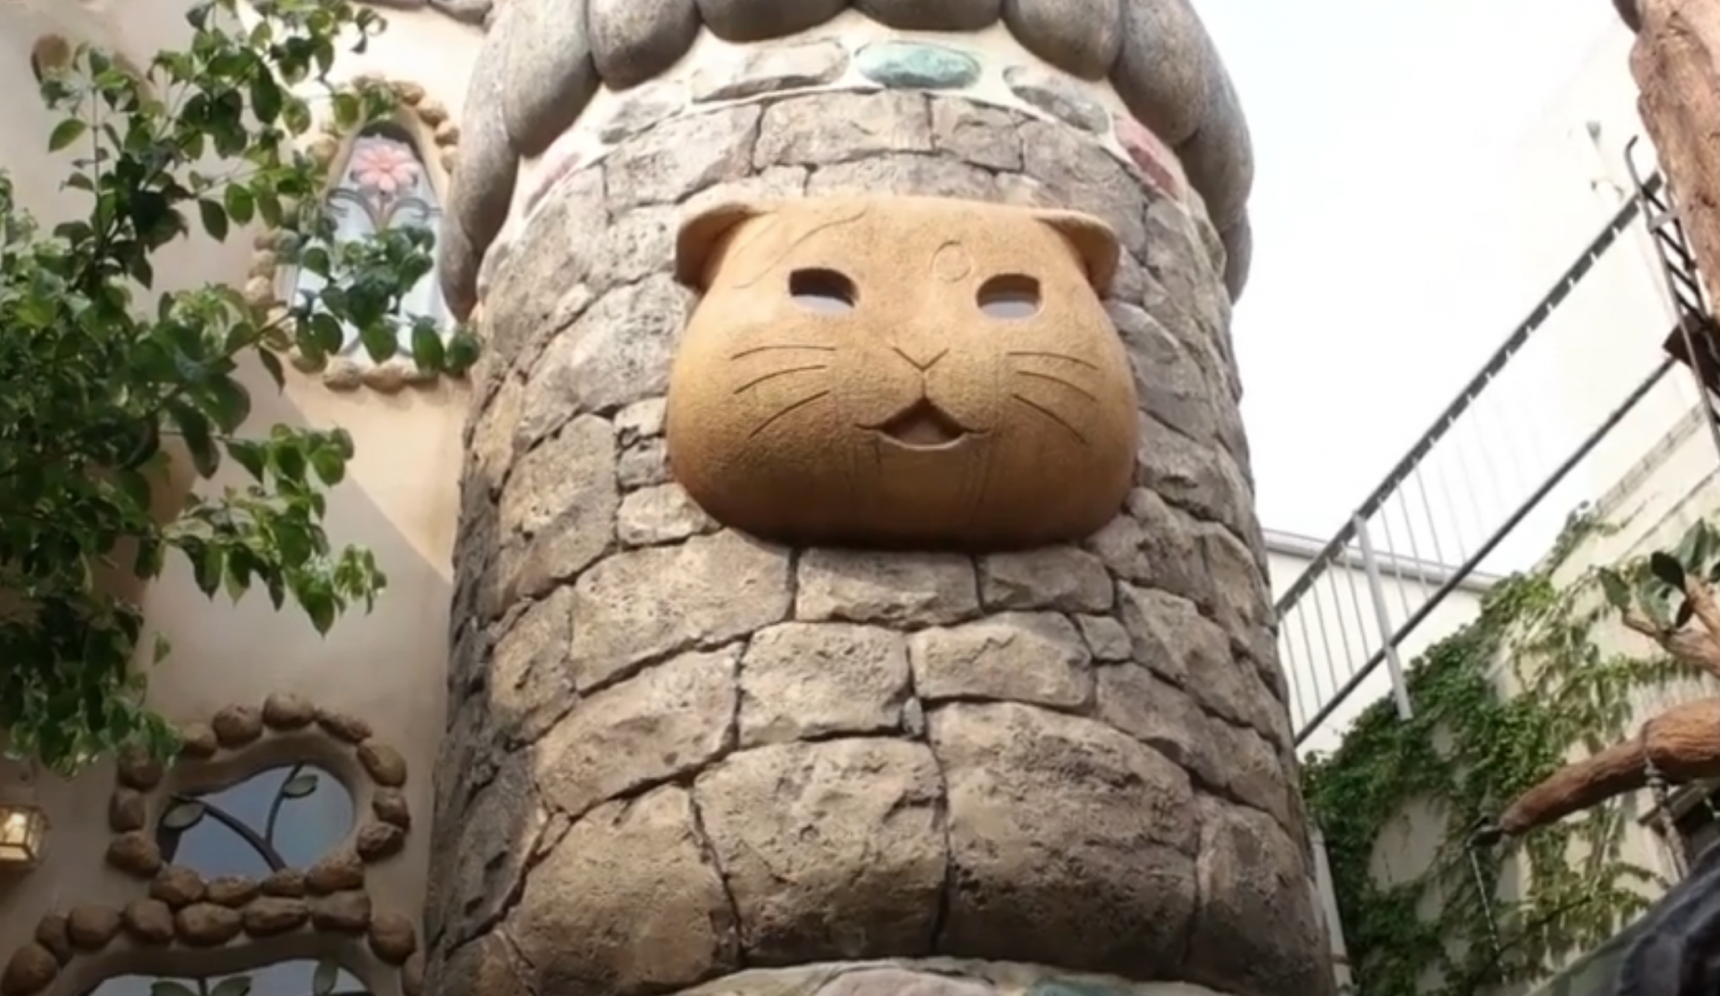 'Purrfect' Fairy Tale Theme Park for Cat Fans